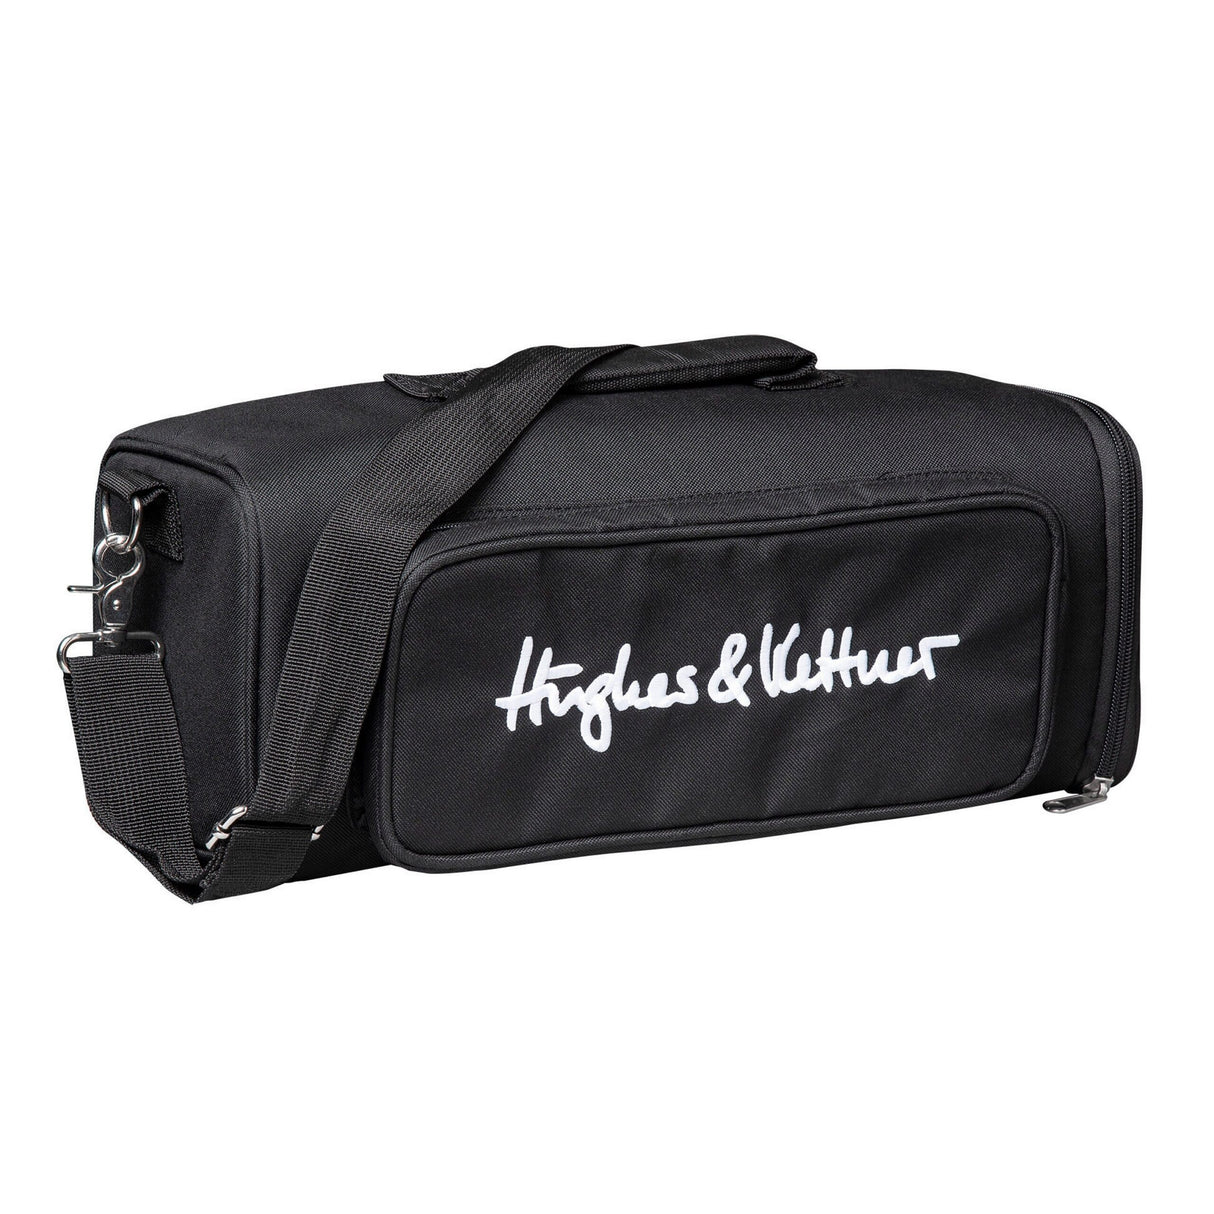 Hughes & Kettner Black Sprit 200 Soft Bag